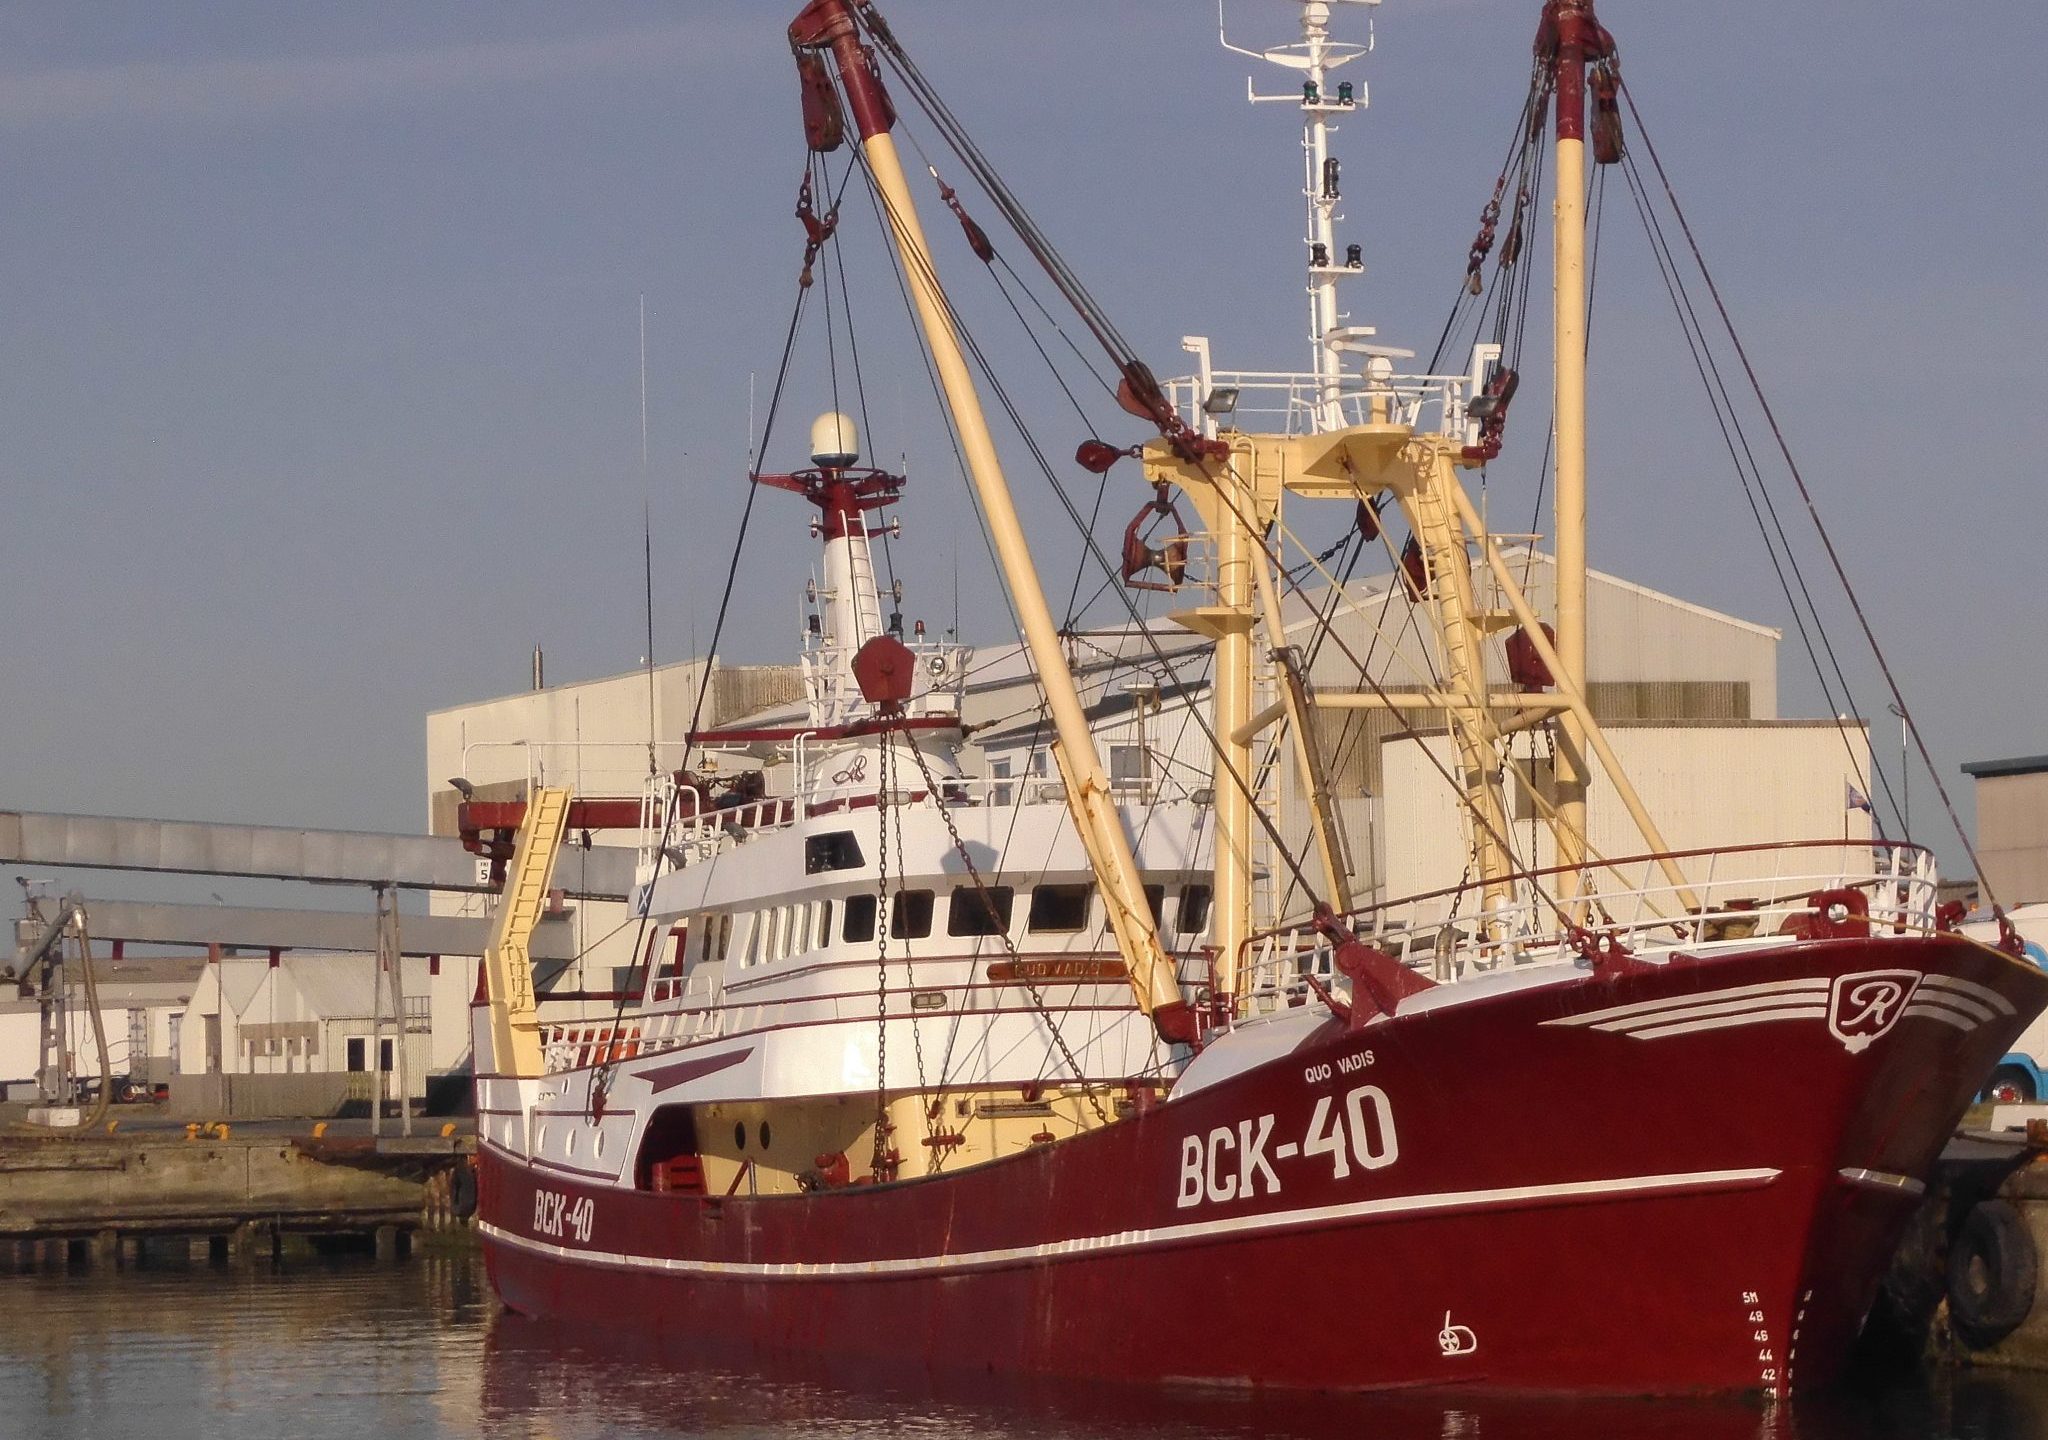 De BCK 40 is een van de vele kotters die vanuit de haven van Thyborøn vissen.